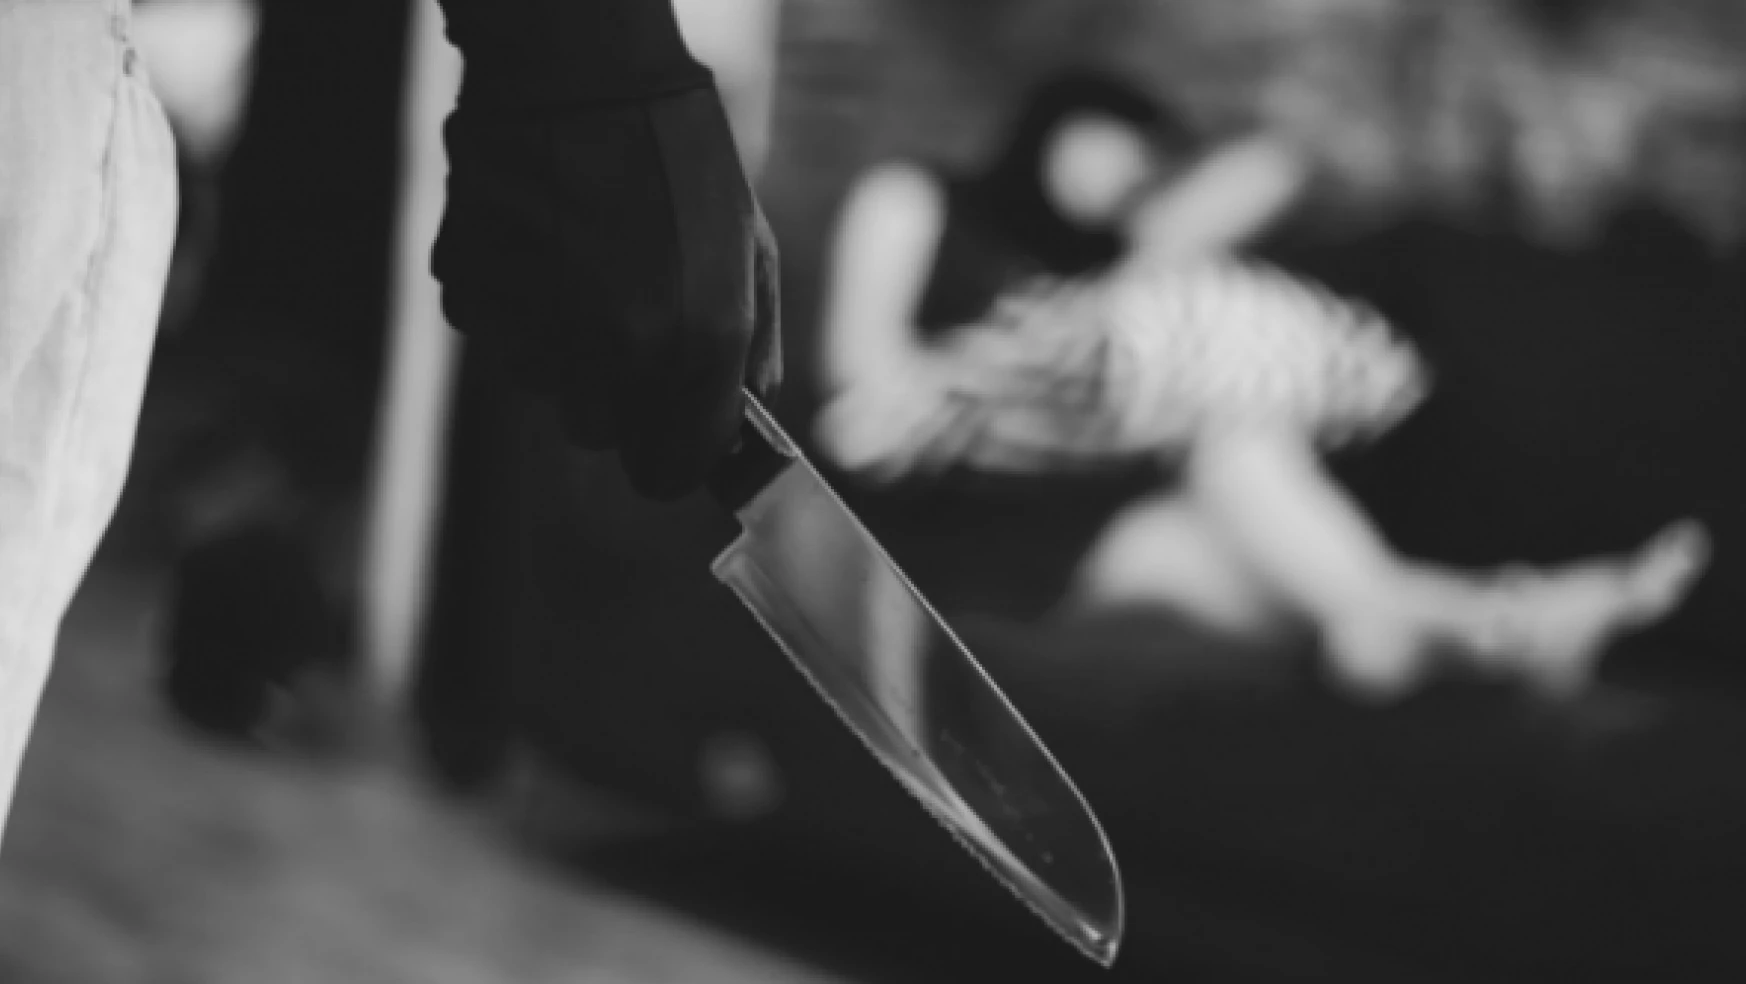 Cani baba 14 yaşındaki kızını 24 kez bıçakladı